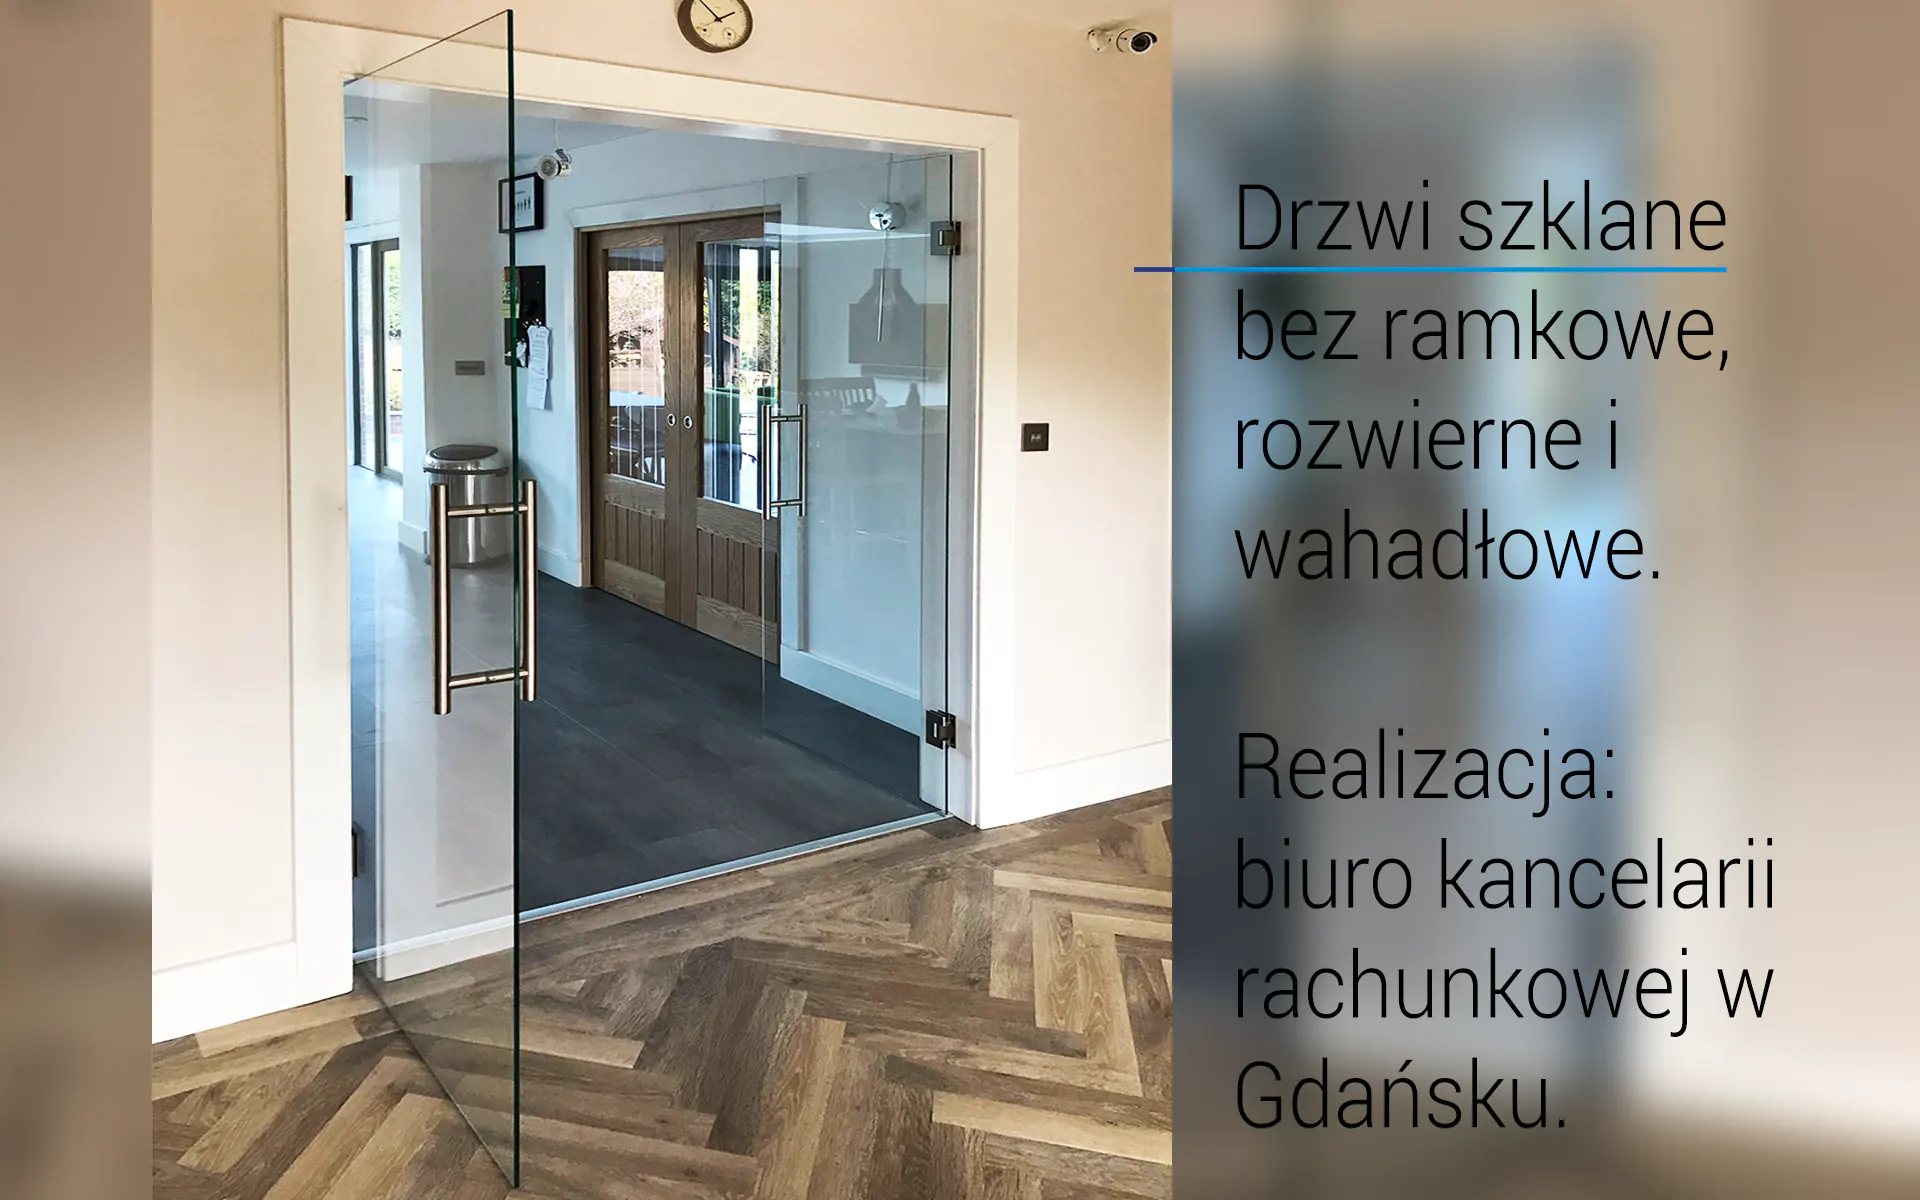 Drzwi szklane rozwierne, wahadłowe Gdańsk.